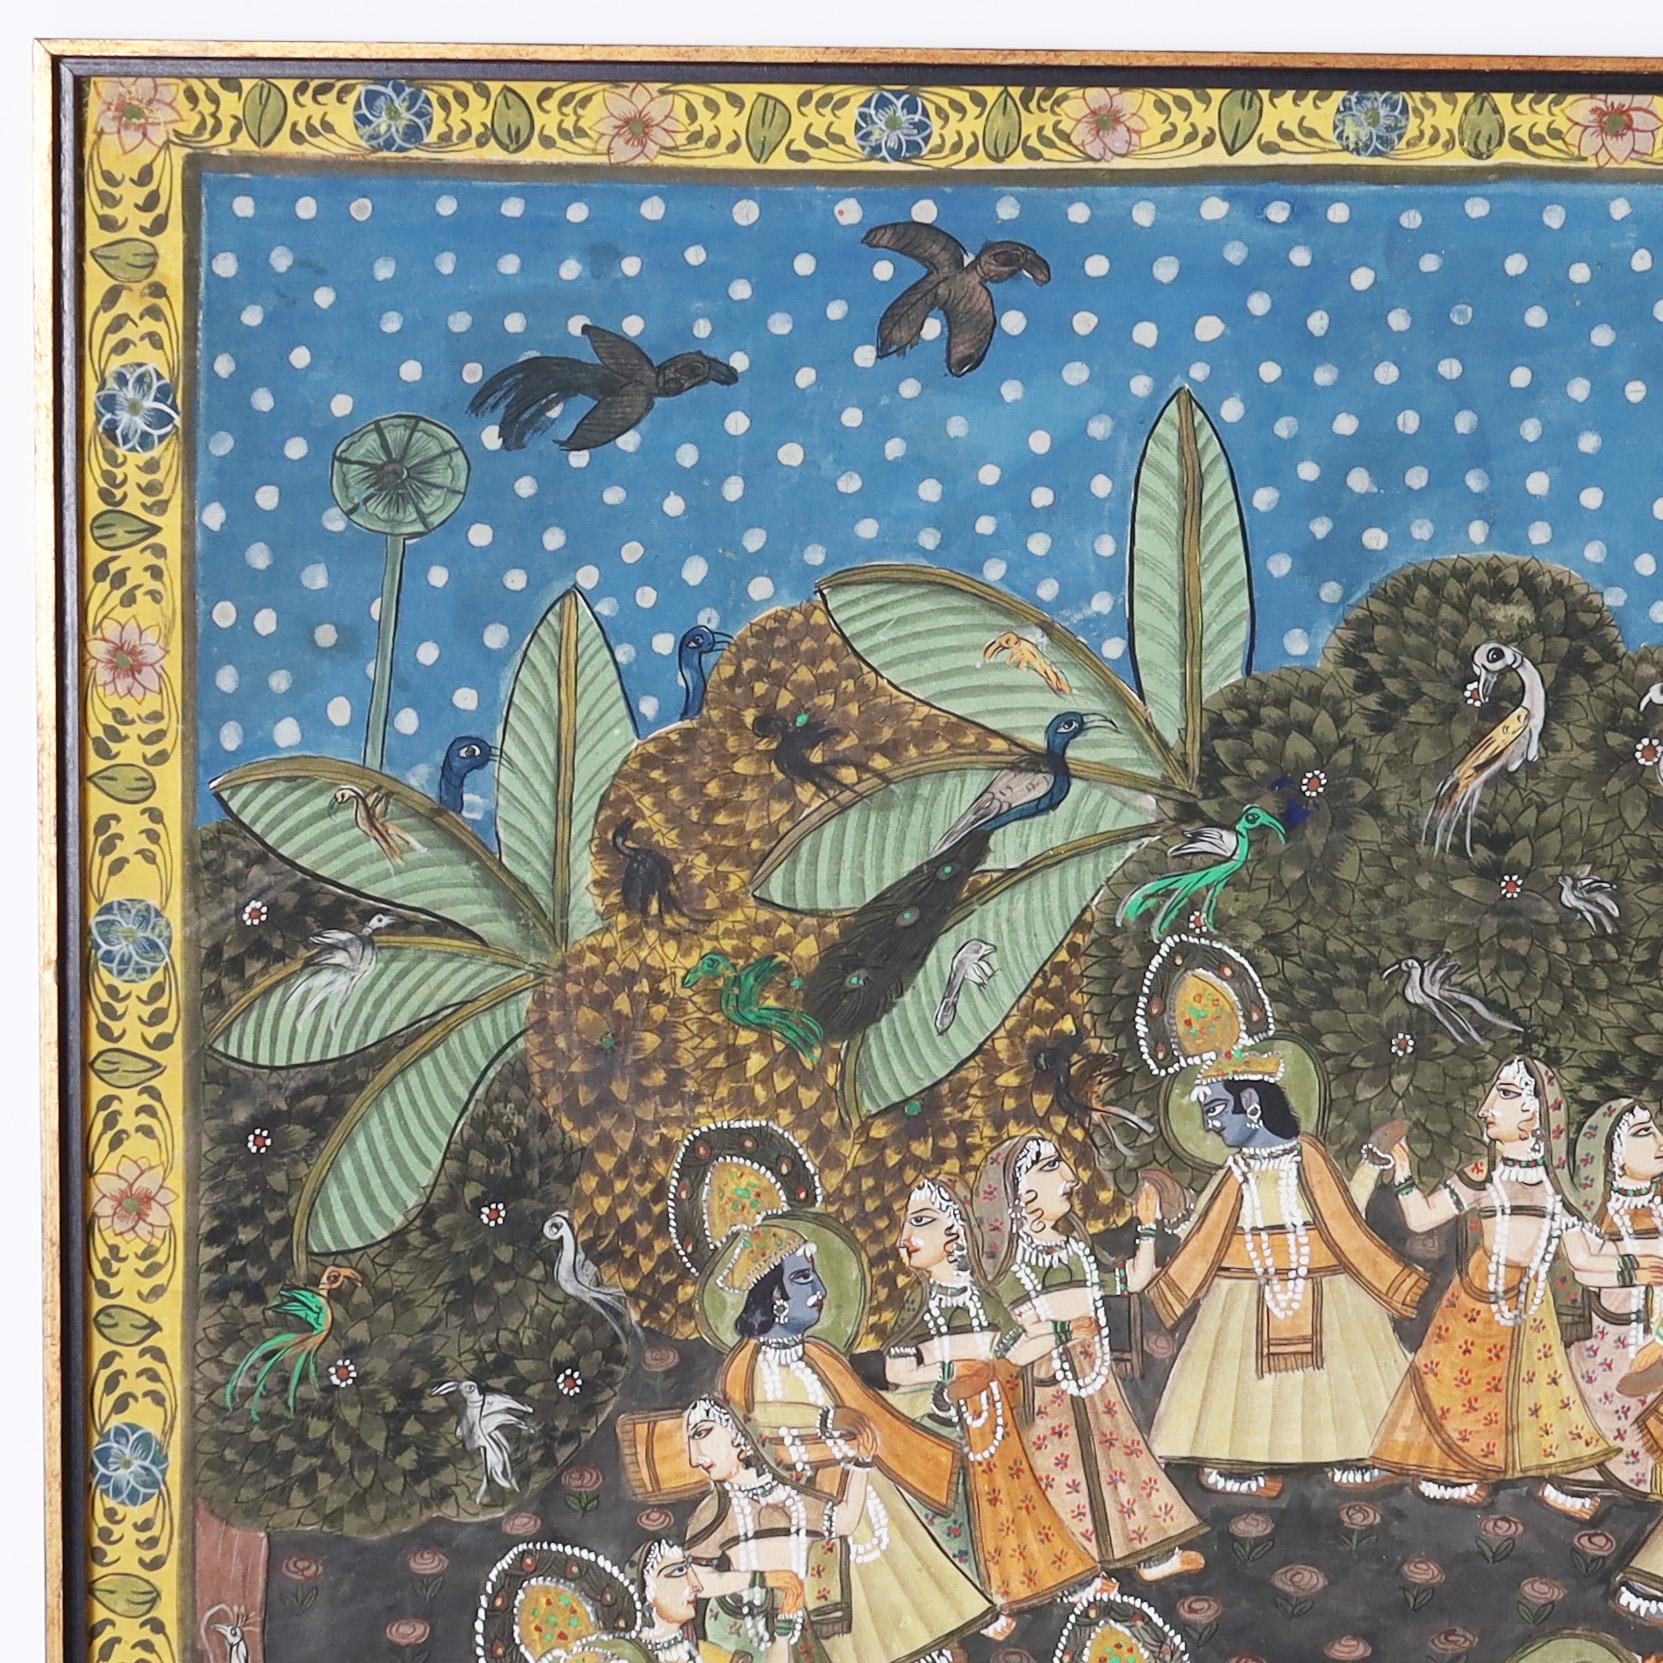 Enchanteresse peinture à la gouache Pishhwai anglo-indienne vintage sur toile montée sur panneau, imprégnée d'un contexte alagorique, représentant Krishna dansant avec des villageois sur un fond d'oiseaux et d'arbres. Présenté dans son cadre